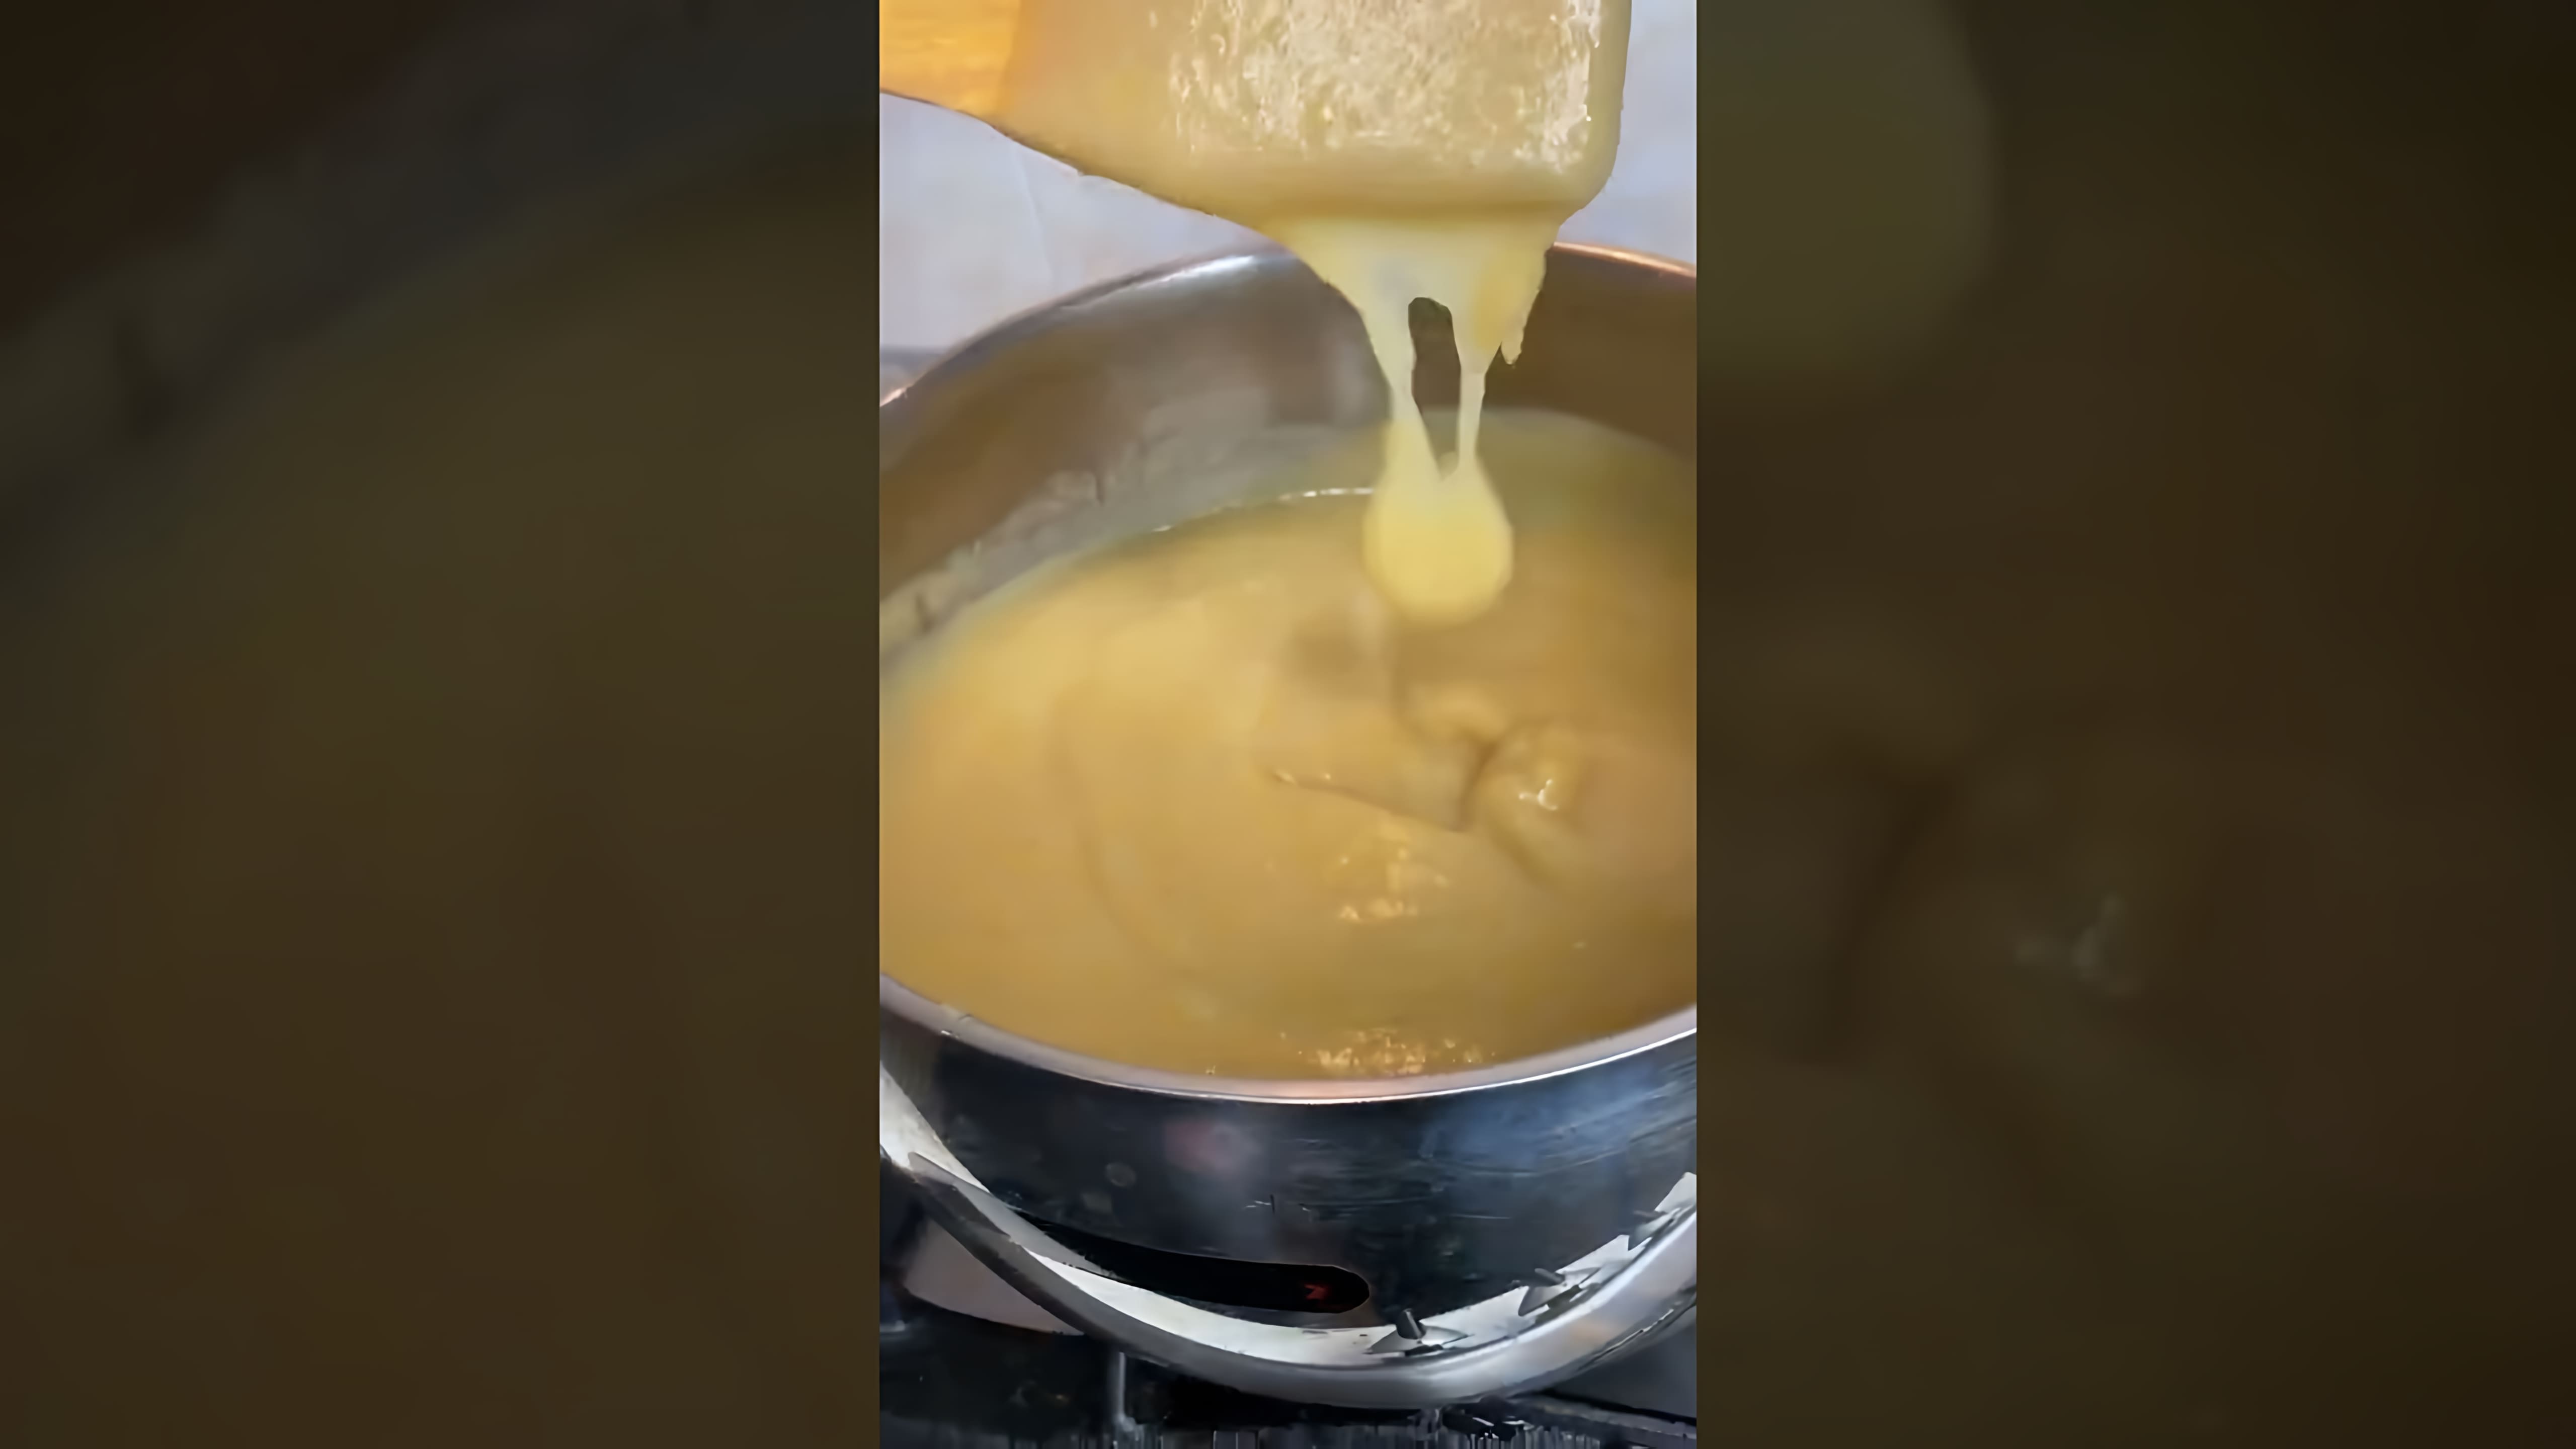 В этом видео демонстрируется процесс приготовления яблочного повидла